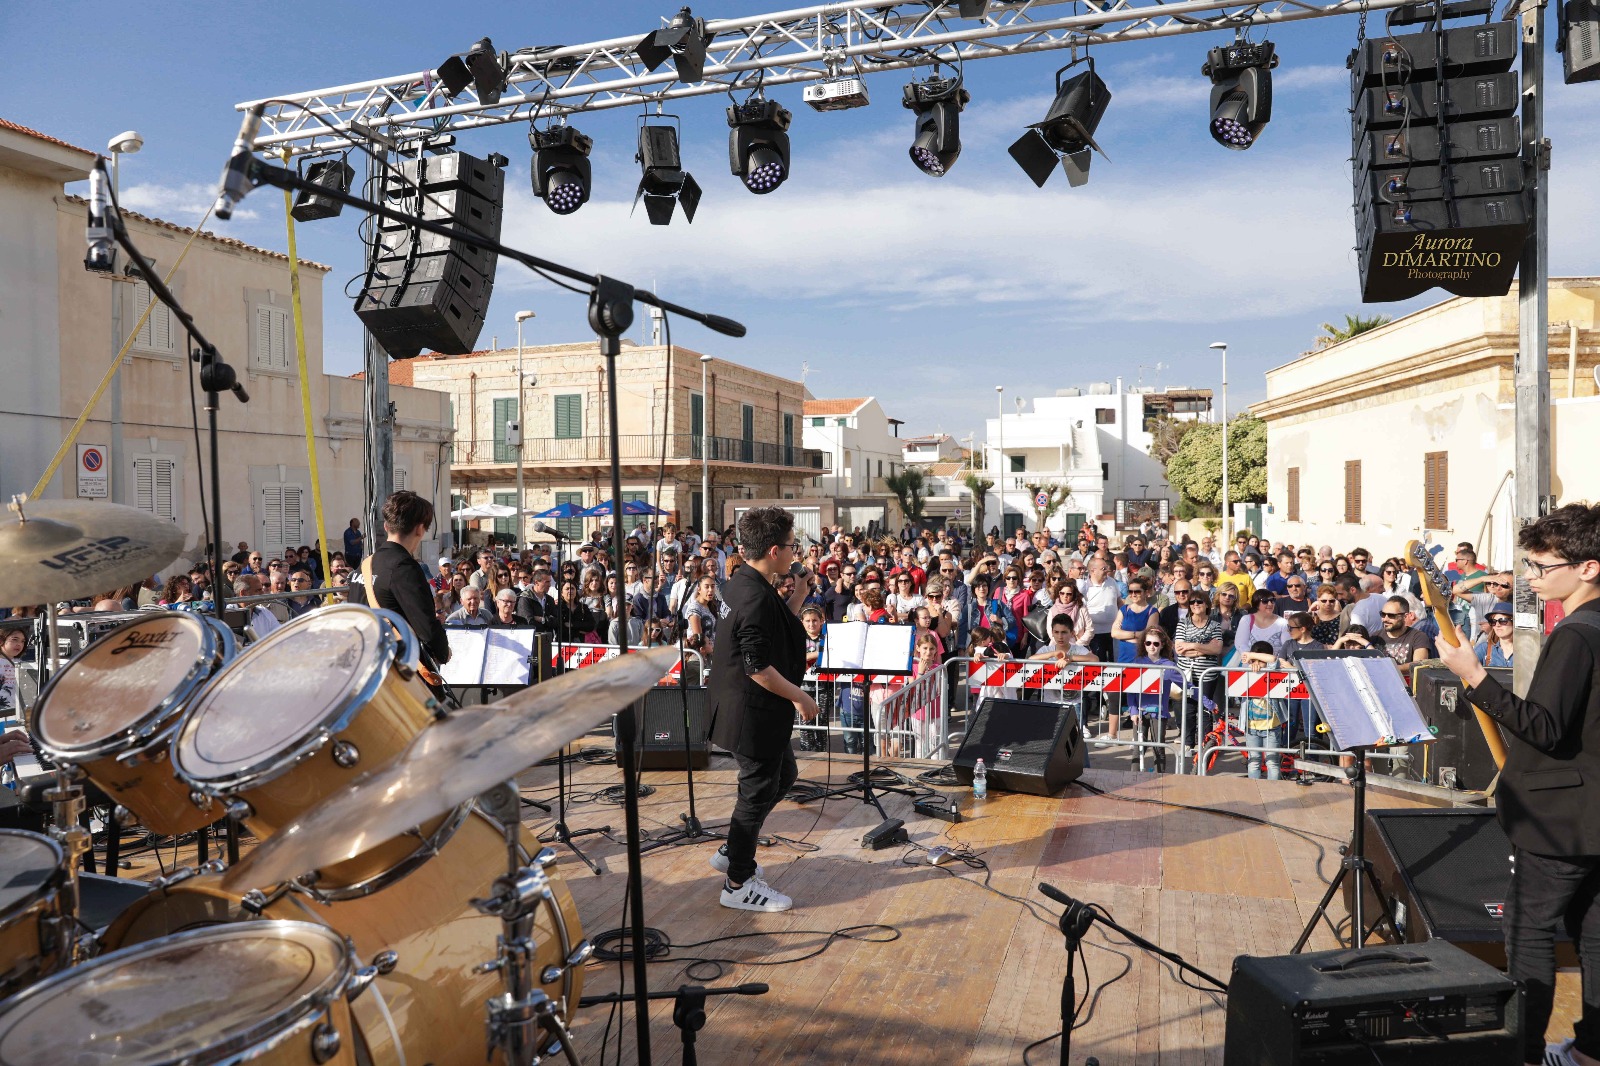  La Consulta timbra il successo: che bello il primo “A’ Sicca Music Fest” FOTO